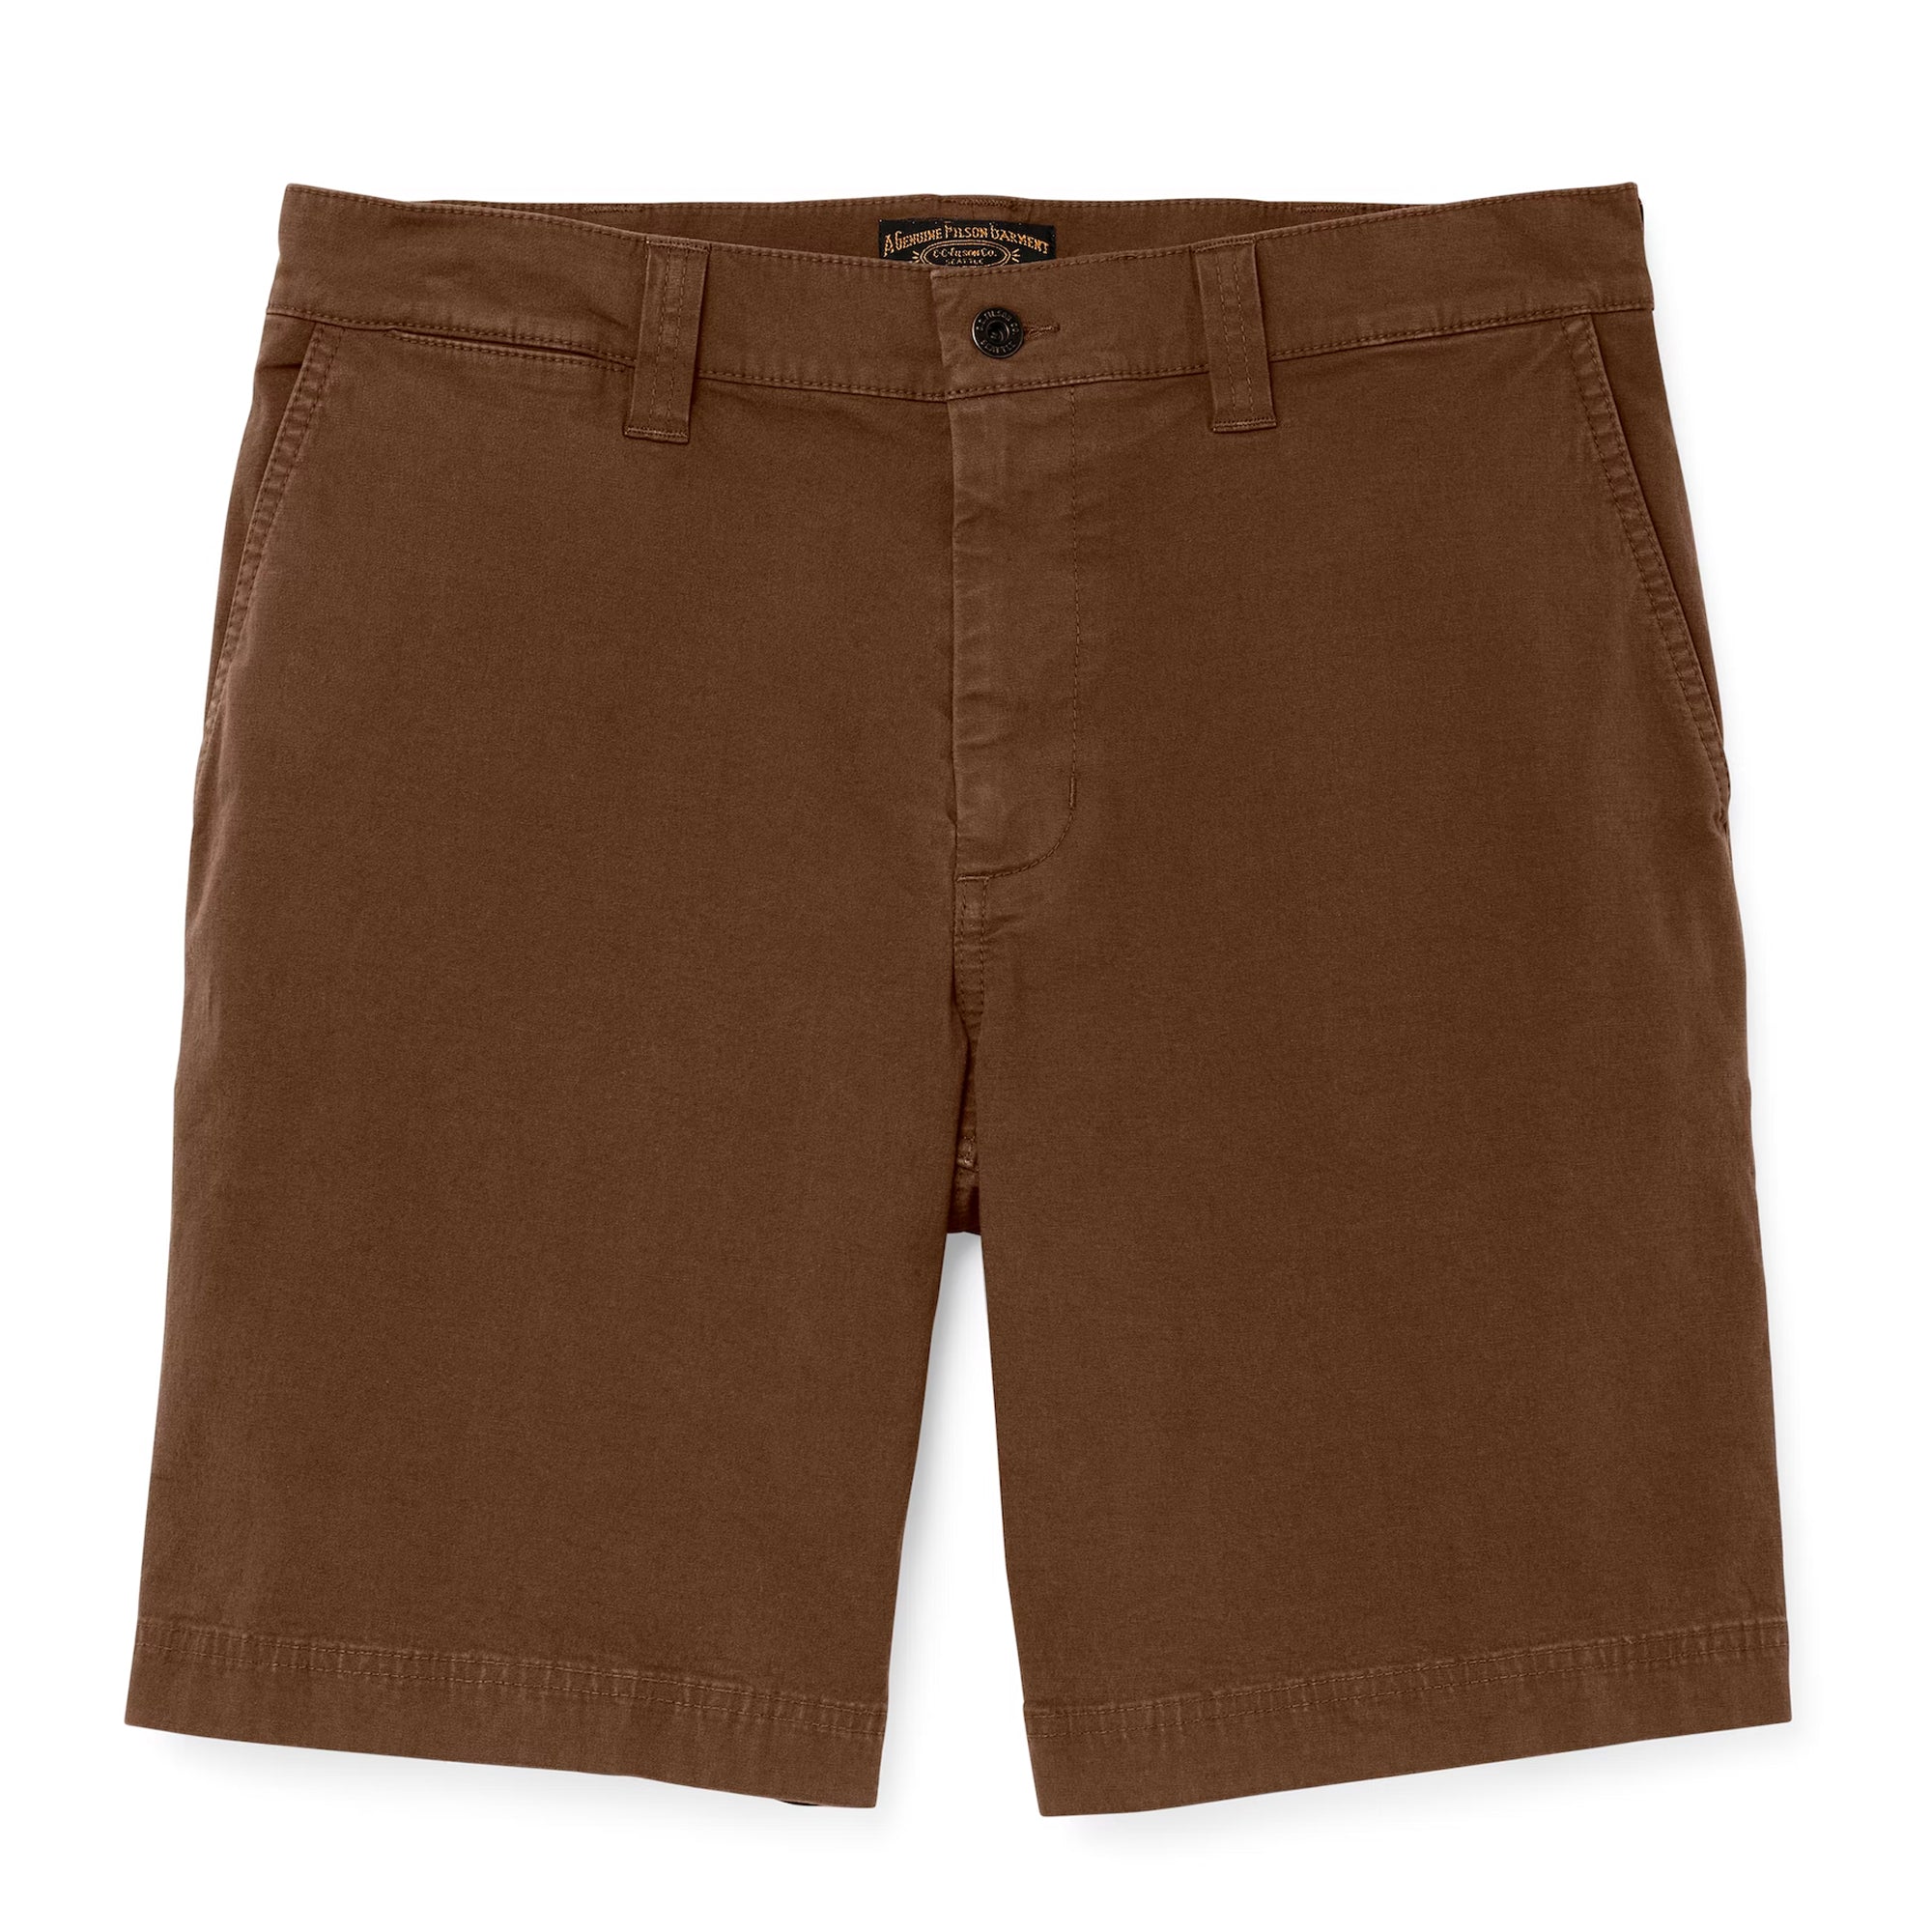 Filson Granite Mountain 9 Shorts - Mud Brown 38